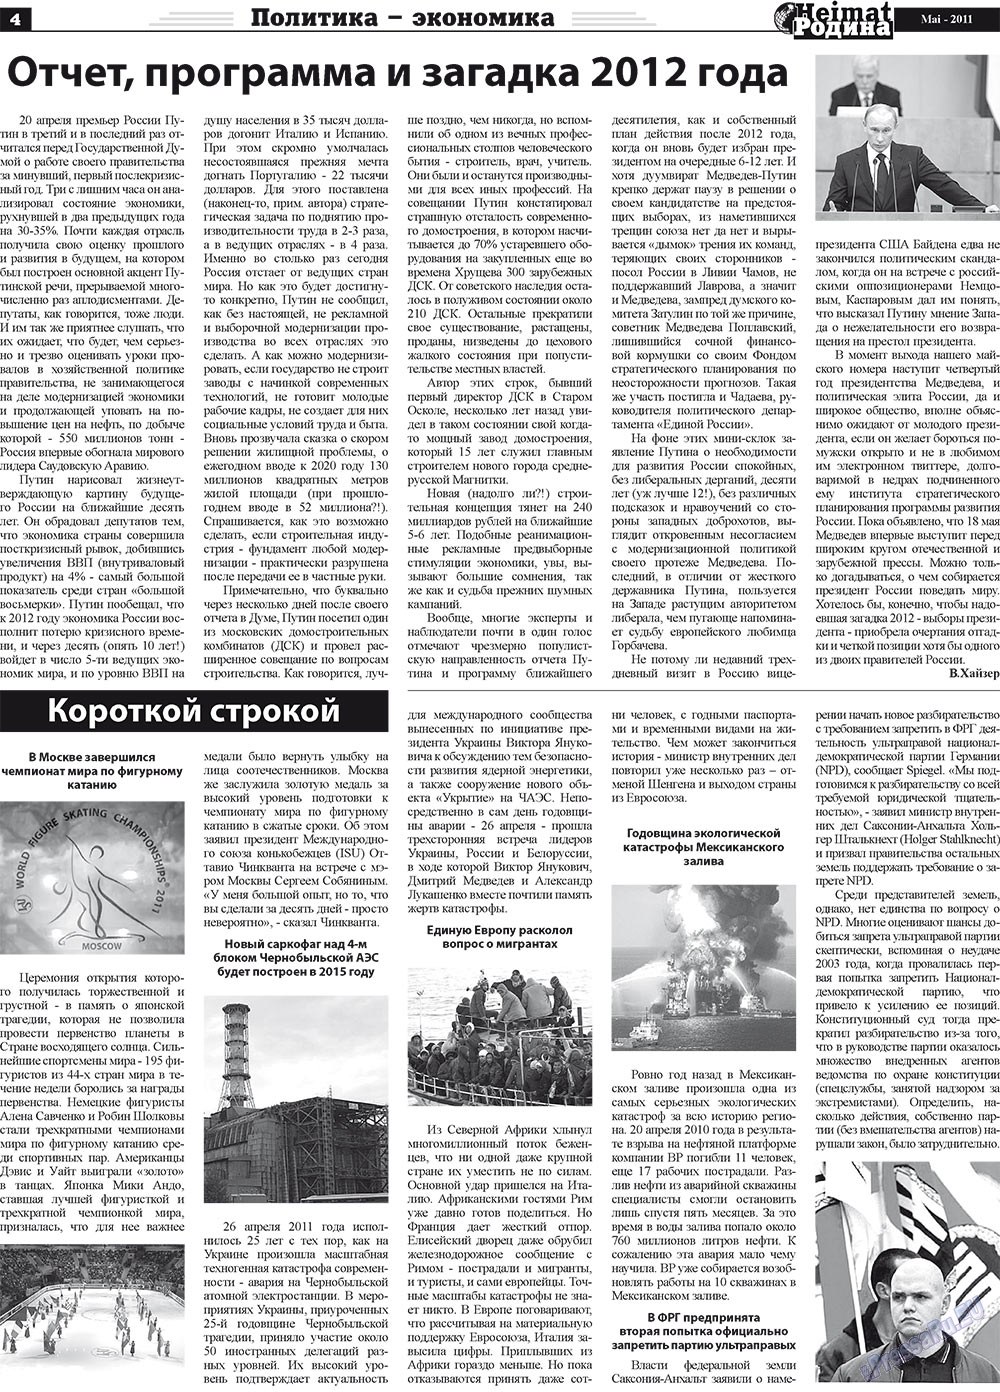 Heimat-Родина (газета). 2011 год, номер 5, стр. 4